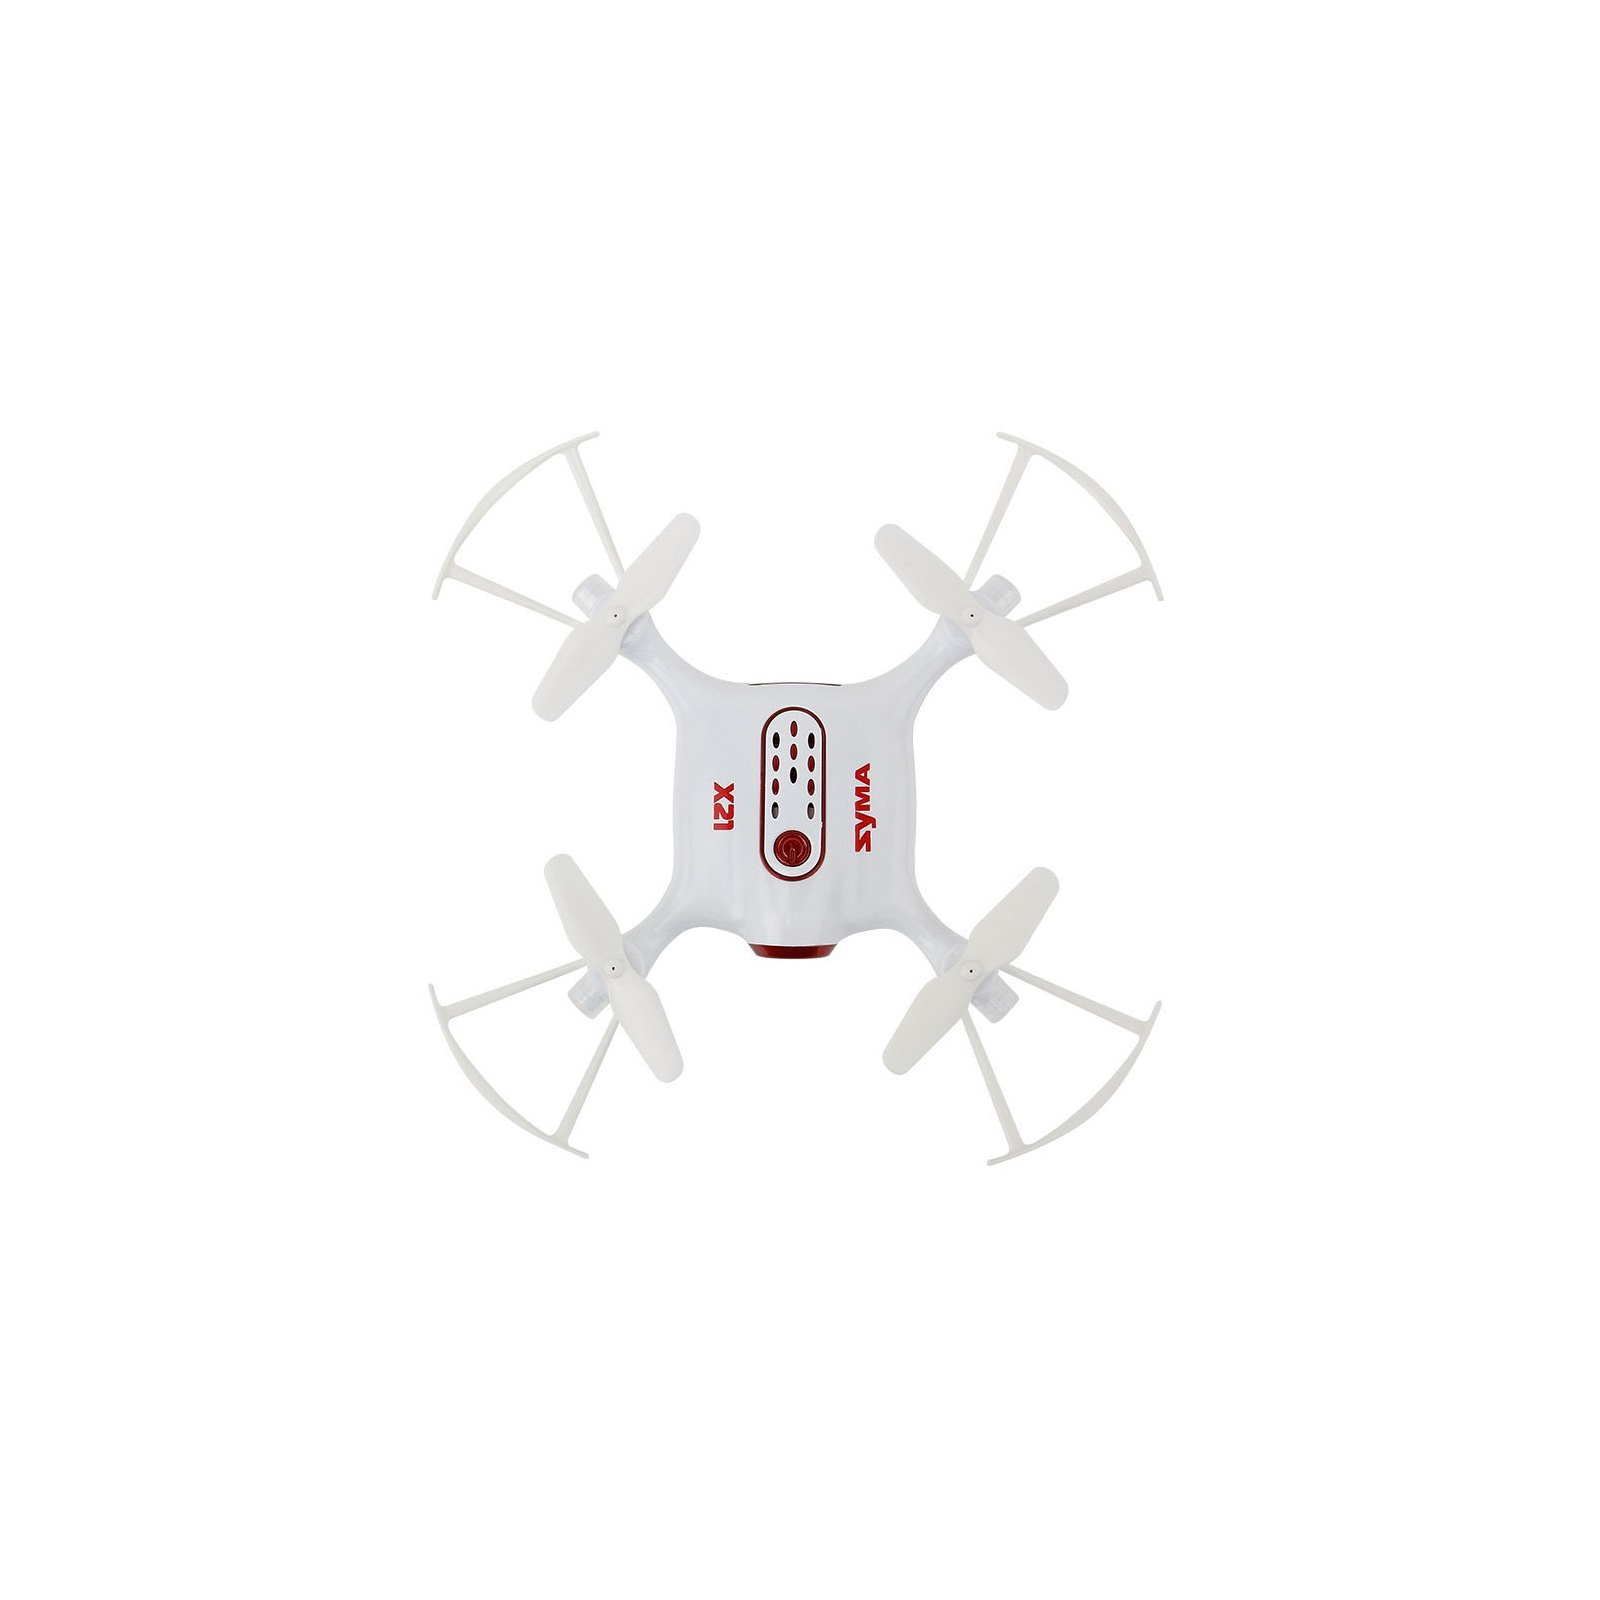 Радиоуправляемая игрушка Syma Квадрокоптер с 2,4 Ггц управлением 13,5 cм (X21) изображение 4